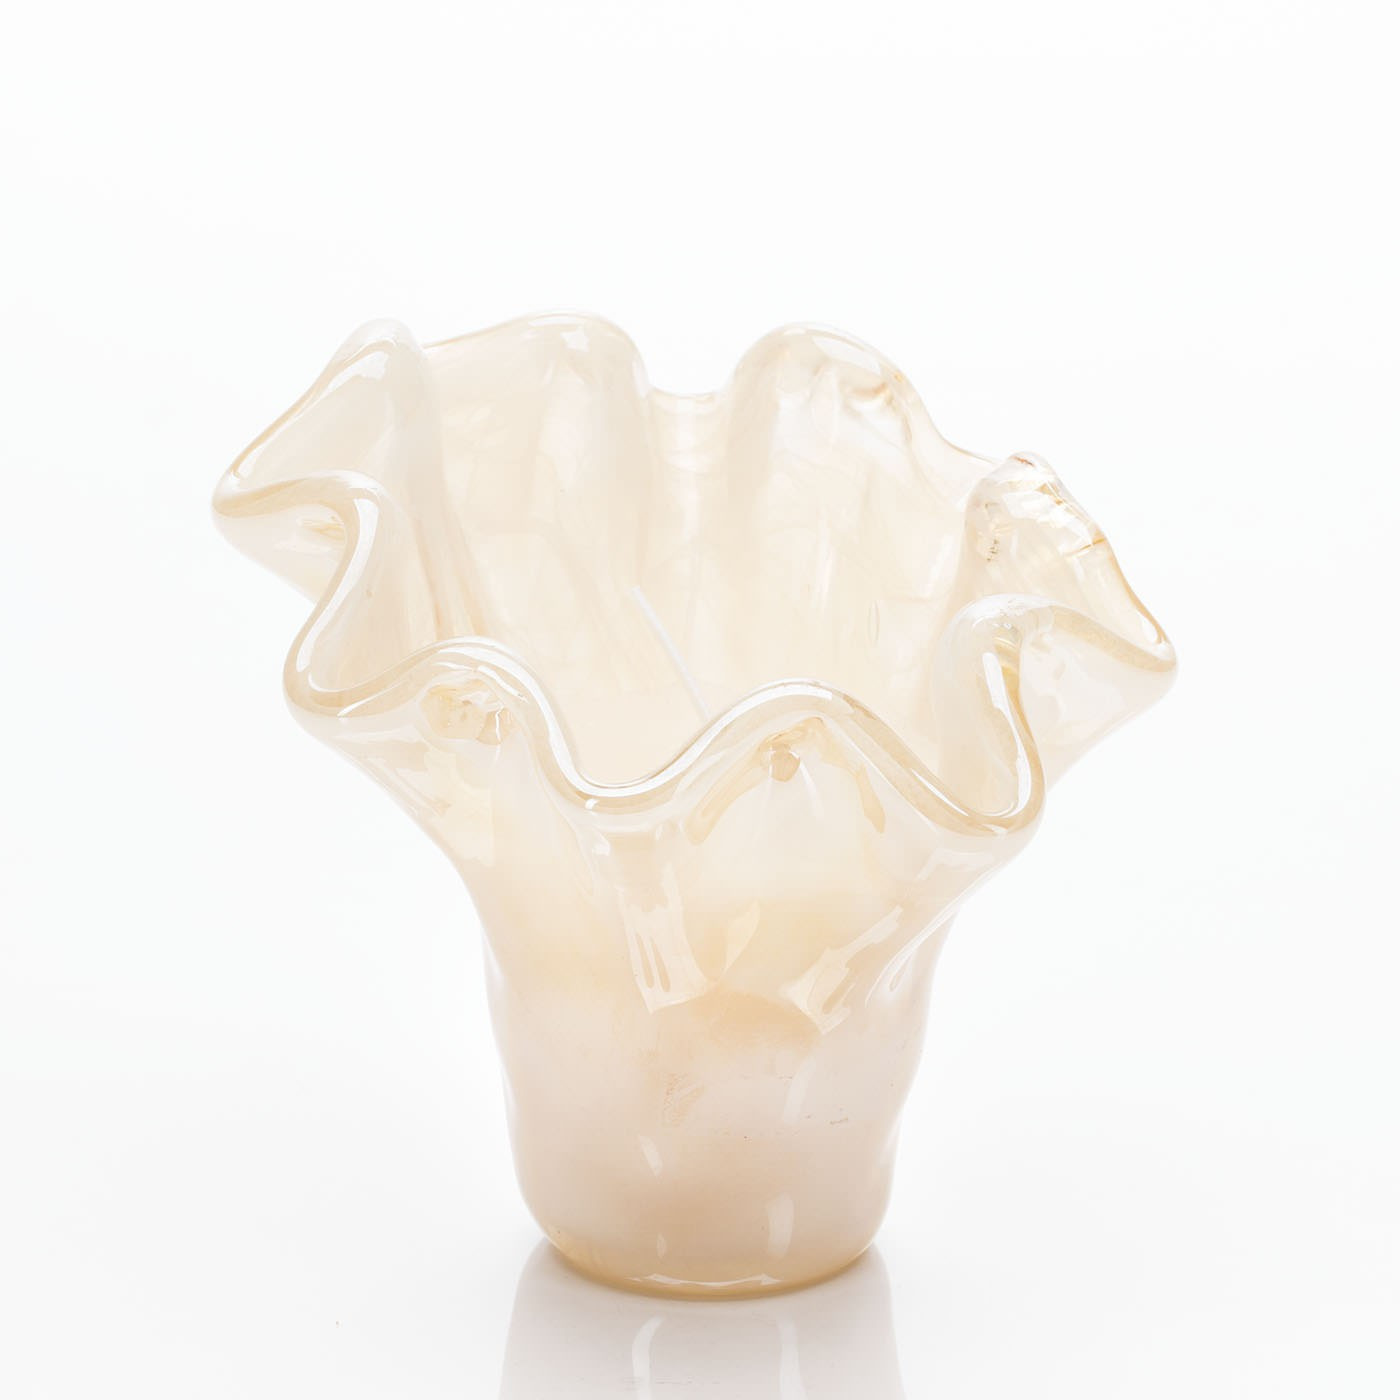 murano glass vase signed of honey luster murano glass handmade candle inside nmmwywqyymfhmdqxy2izmdexogfmztzjzju0otc1yjmyzdzmmwjhmgy3zwvmzdbmn2i0nzzmzdflmmeyztp7imrzijoiaw1hz2uilcjmijoixc84xc85xc84oty2mzdfzc5qcgcilcjmysi6dhj1zswizmyionrydwusimzxijo5mcwiznqionrydwv9